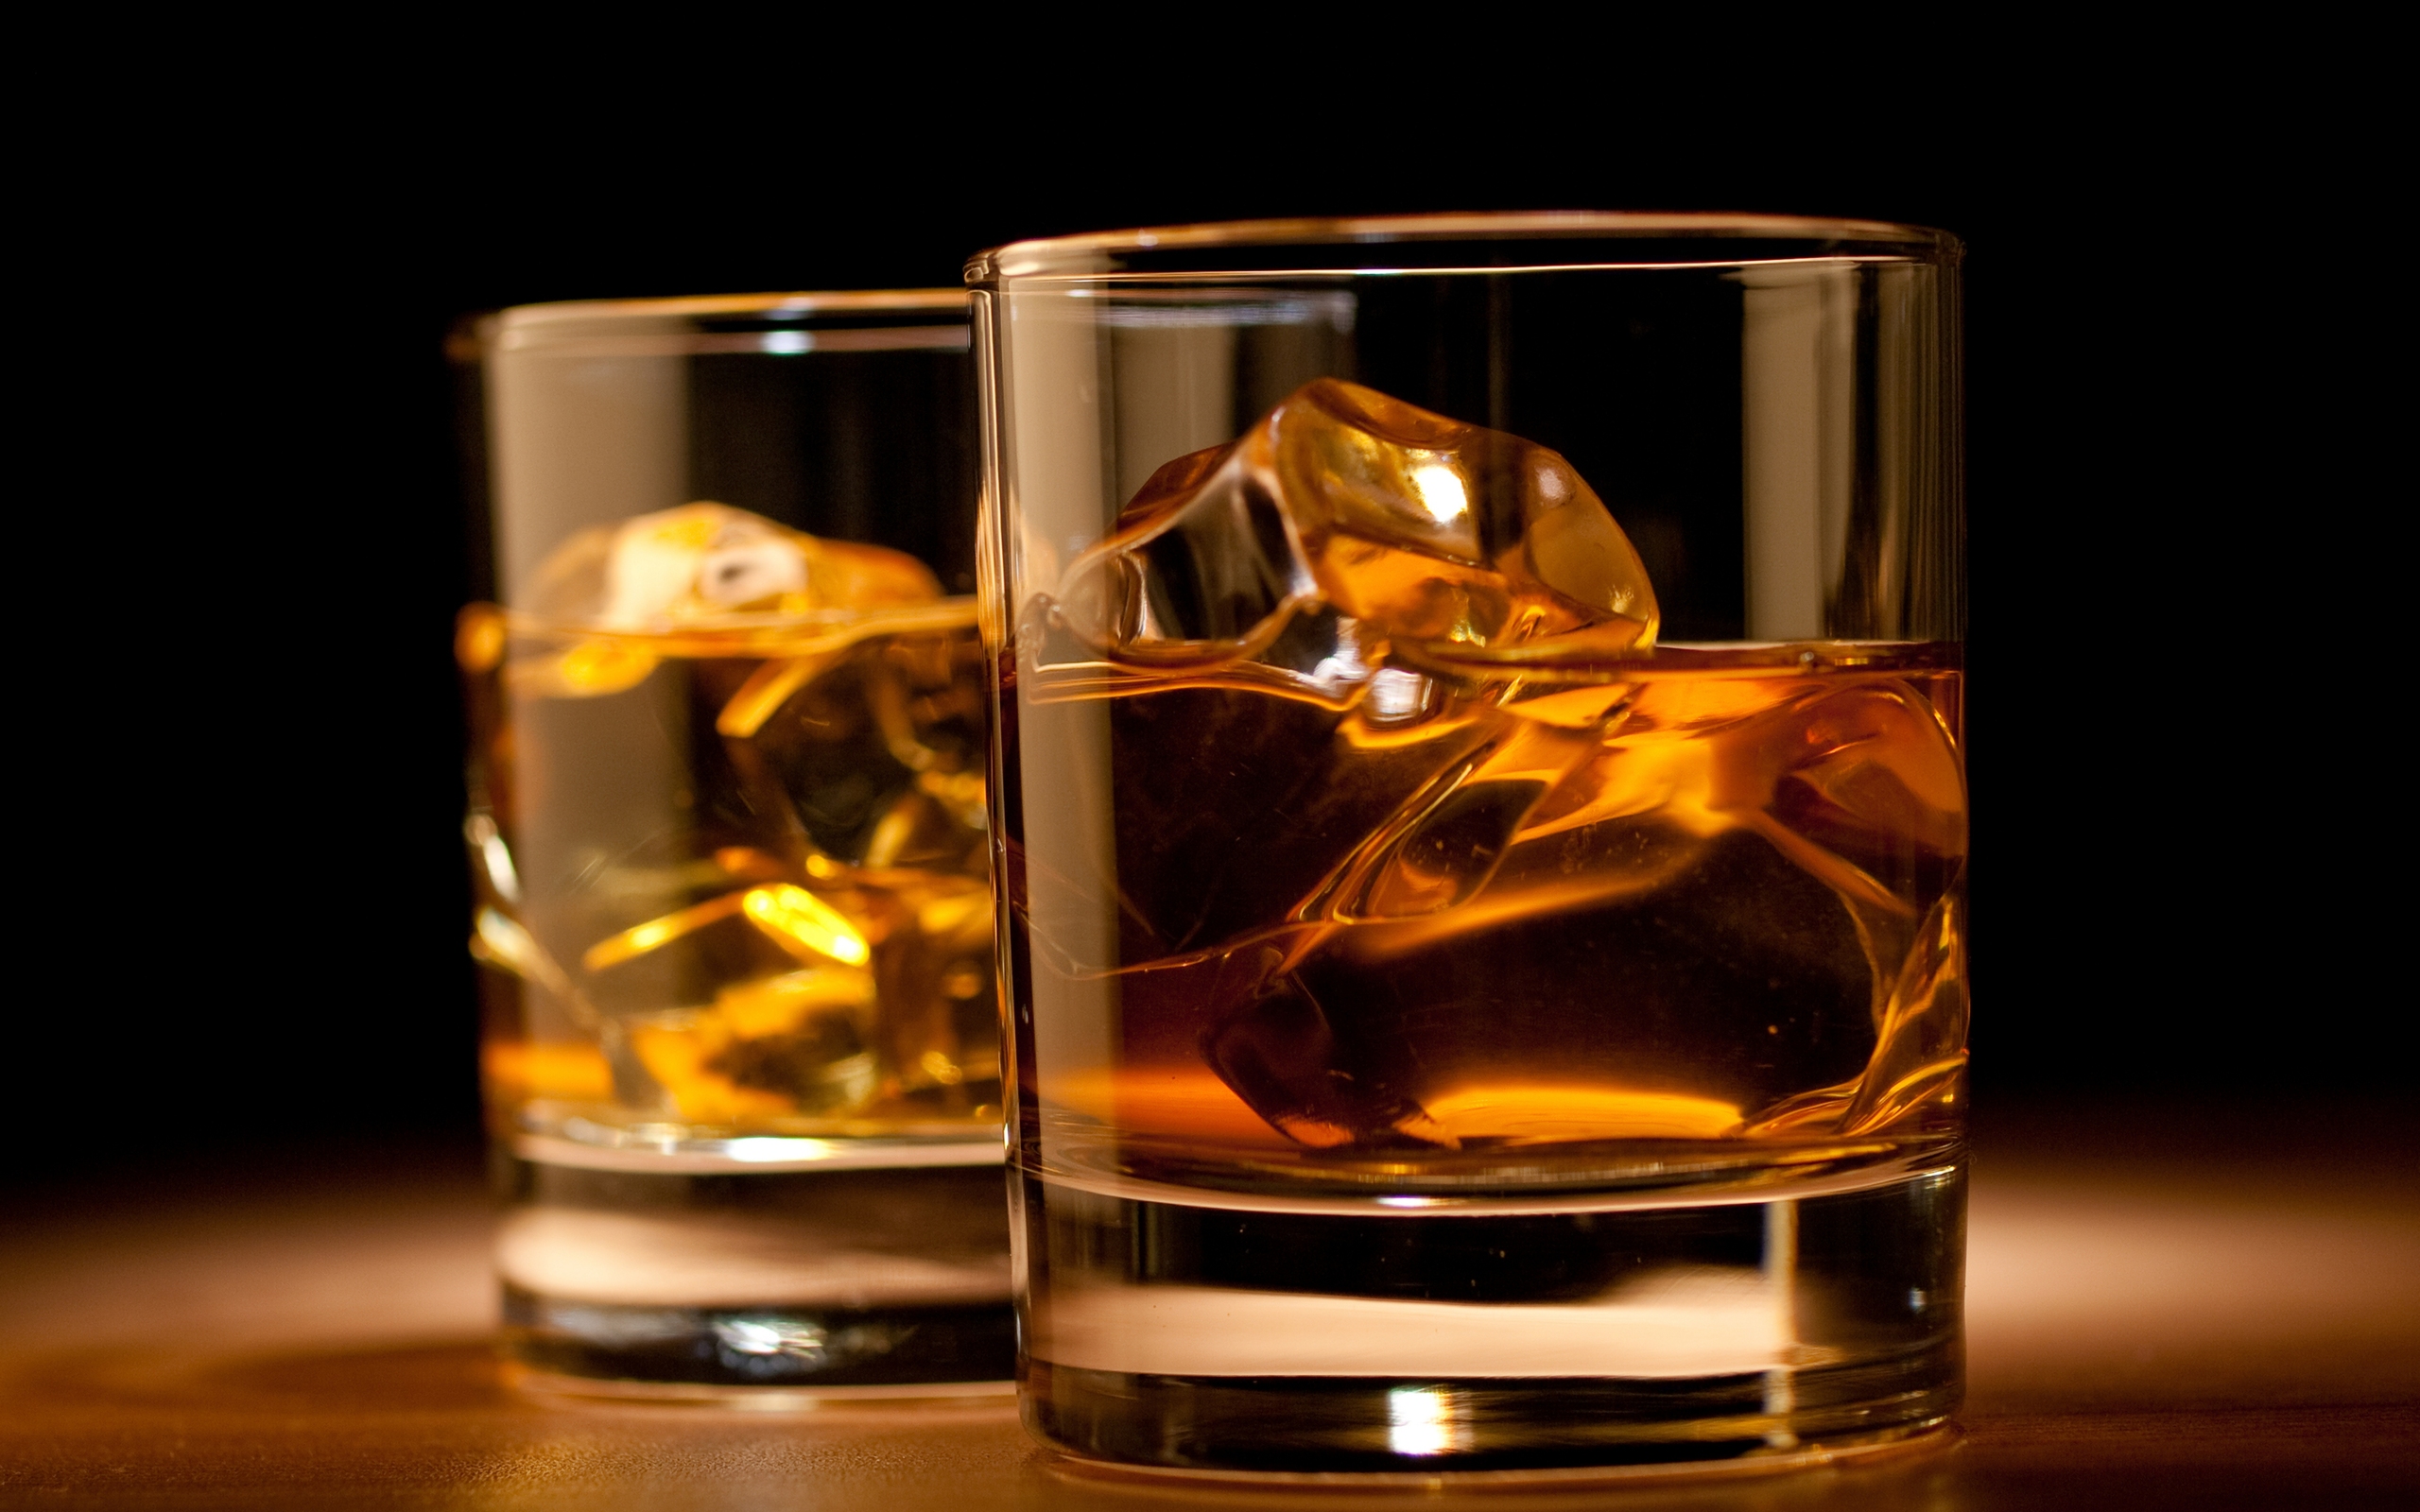 Whisky  desktop Images